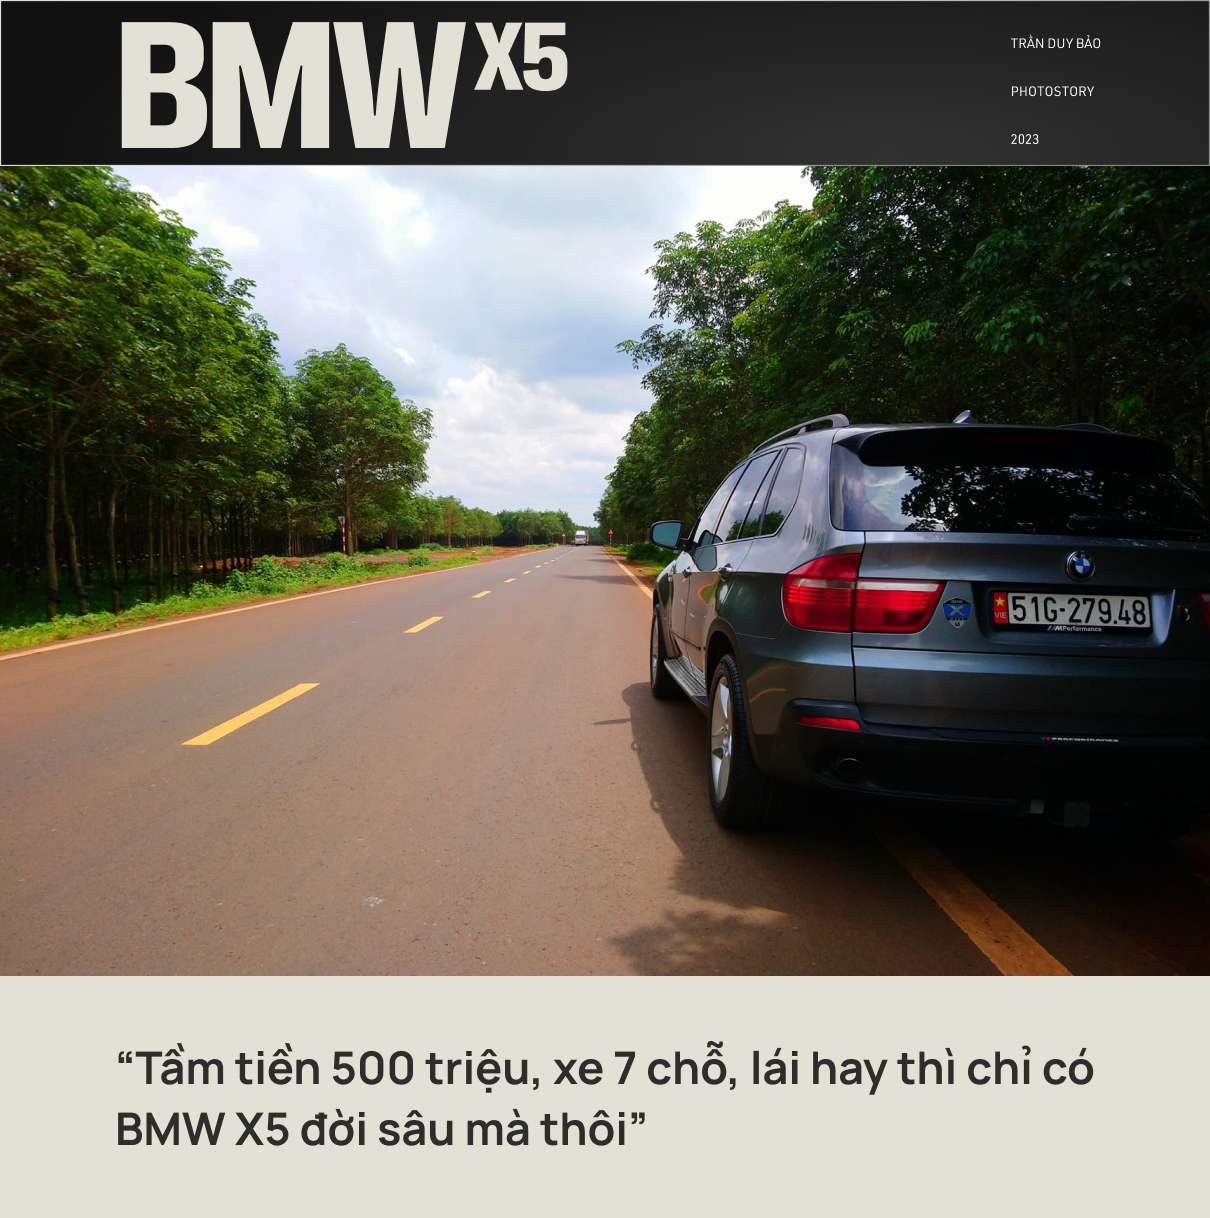 Mang BMW X5 18 năm tuổi đi xuyên Việt 5 lần, kiến trúc sư nói lên tâm trạng đúng chất Bimmer: ‘Đừng đi nhiều kẻo bị nghiện’ - Ảnh 2.